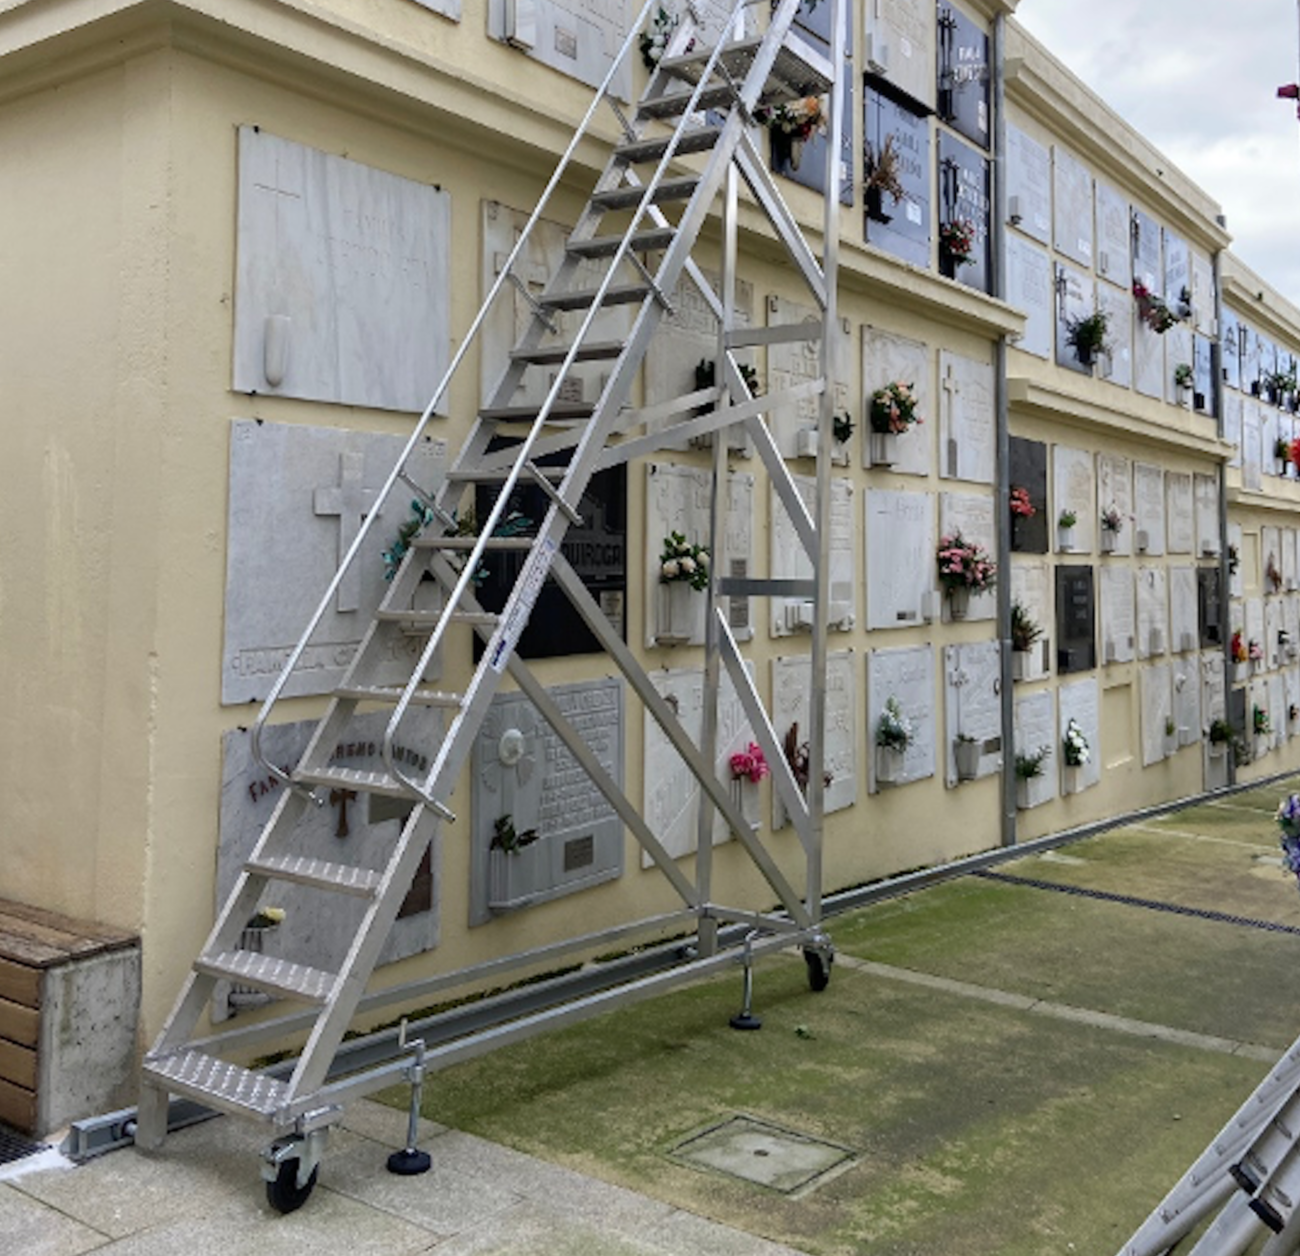 Marco Taller fabrica escaleras seguras para acceder a los nichos de mayor altura sin ningún peligro